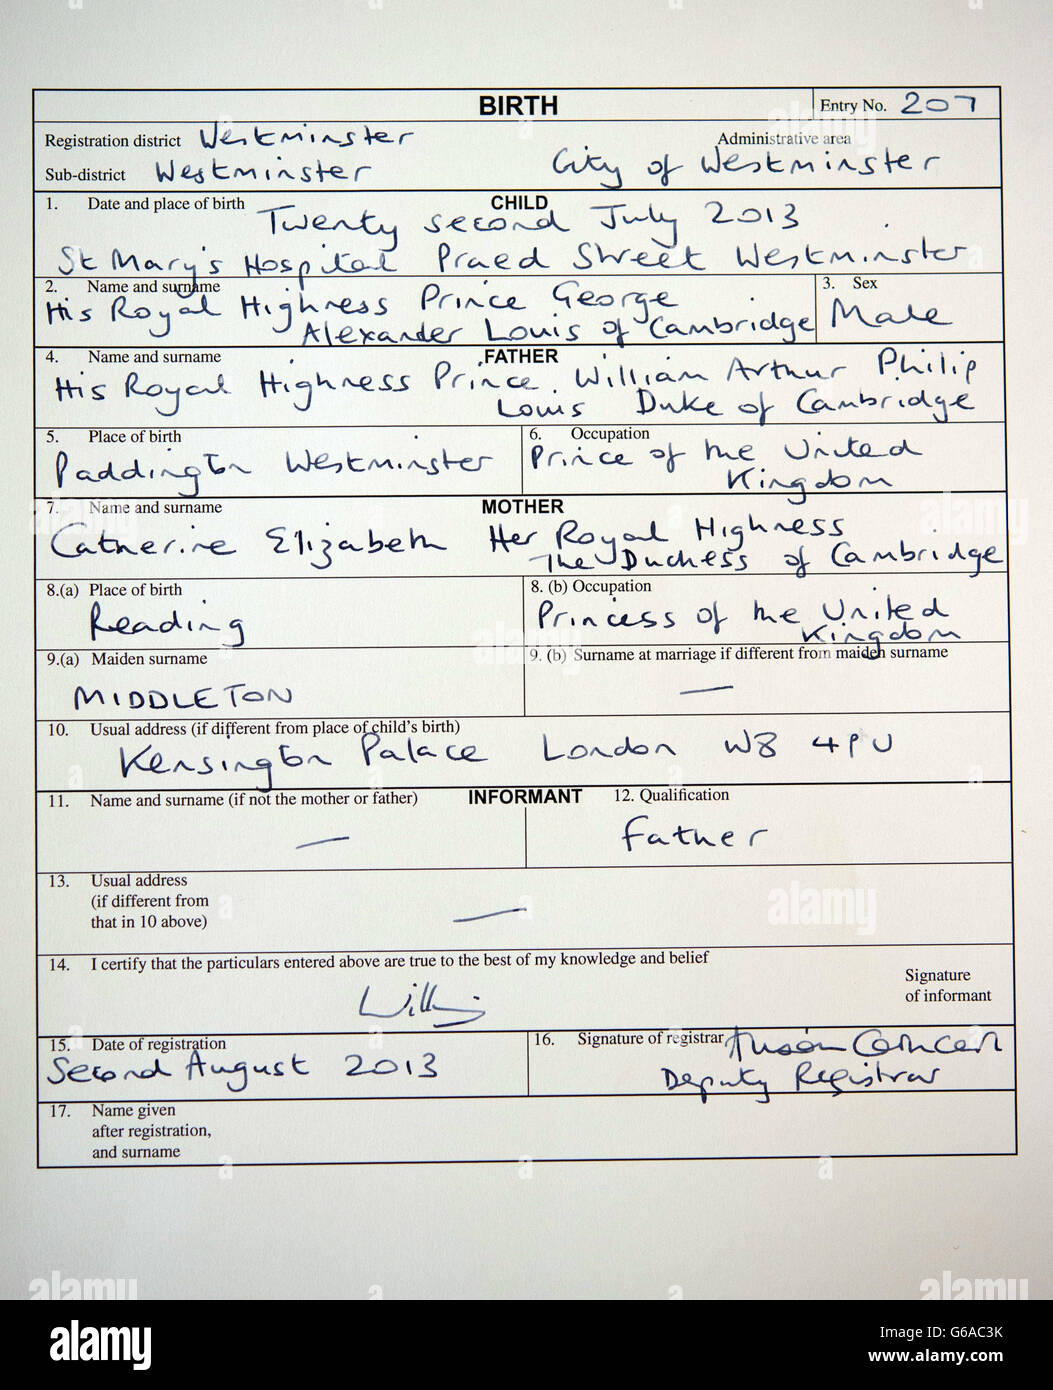 Una visione generale di una copia del registro di nascita del principe Giorgio di Cambridge, firmato stamattina dal padre, il duca di Cambridge a Kensington Palace, testimoniato da un cancelliere del Westminster Register Office. Foto Stock